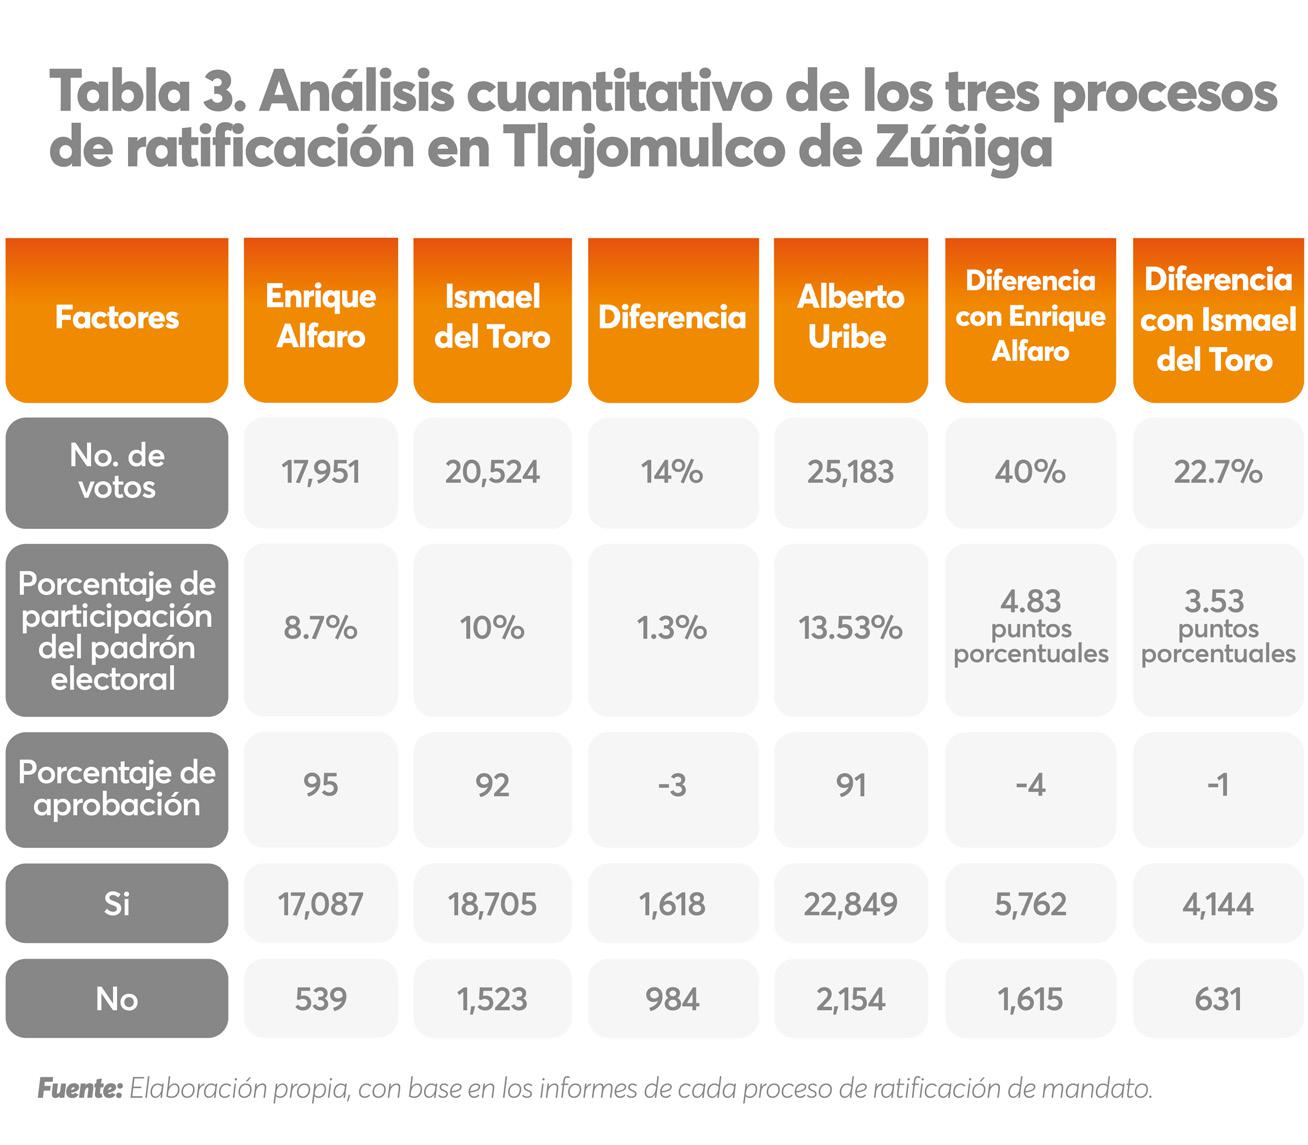 Analisis cuantitativo de los tres procesos de ratificación en Tlajomulco